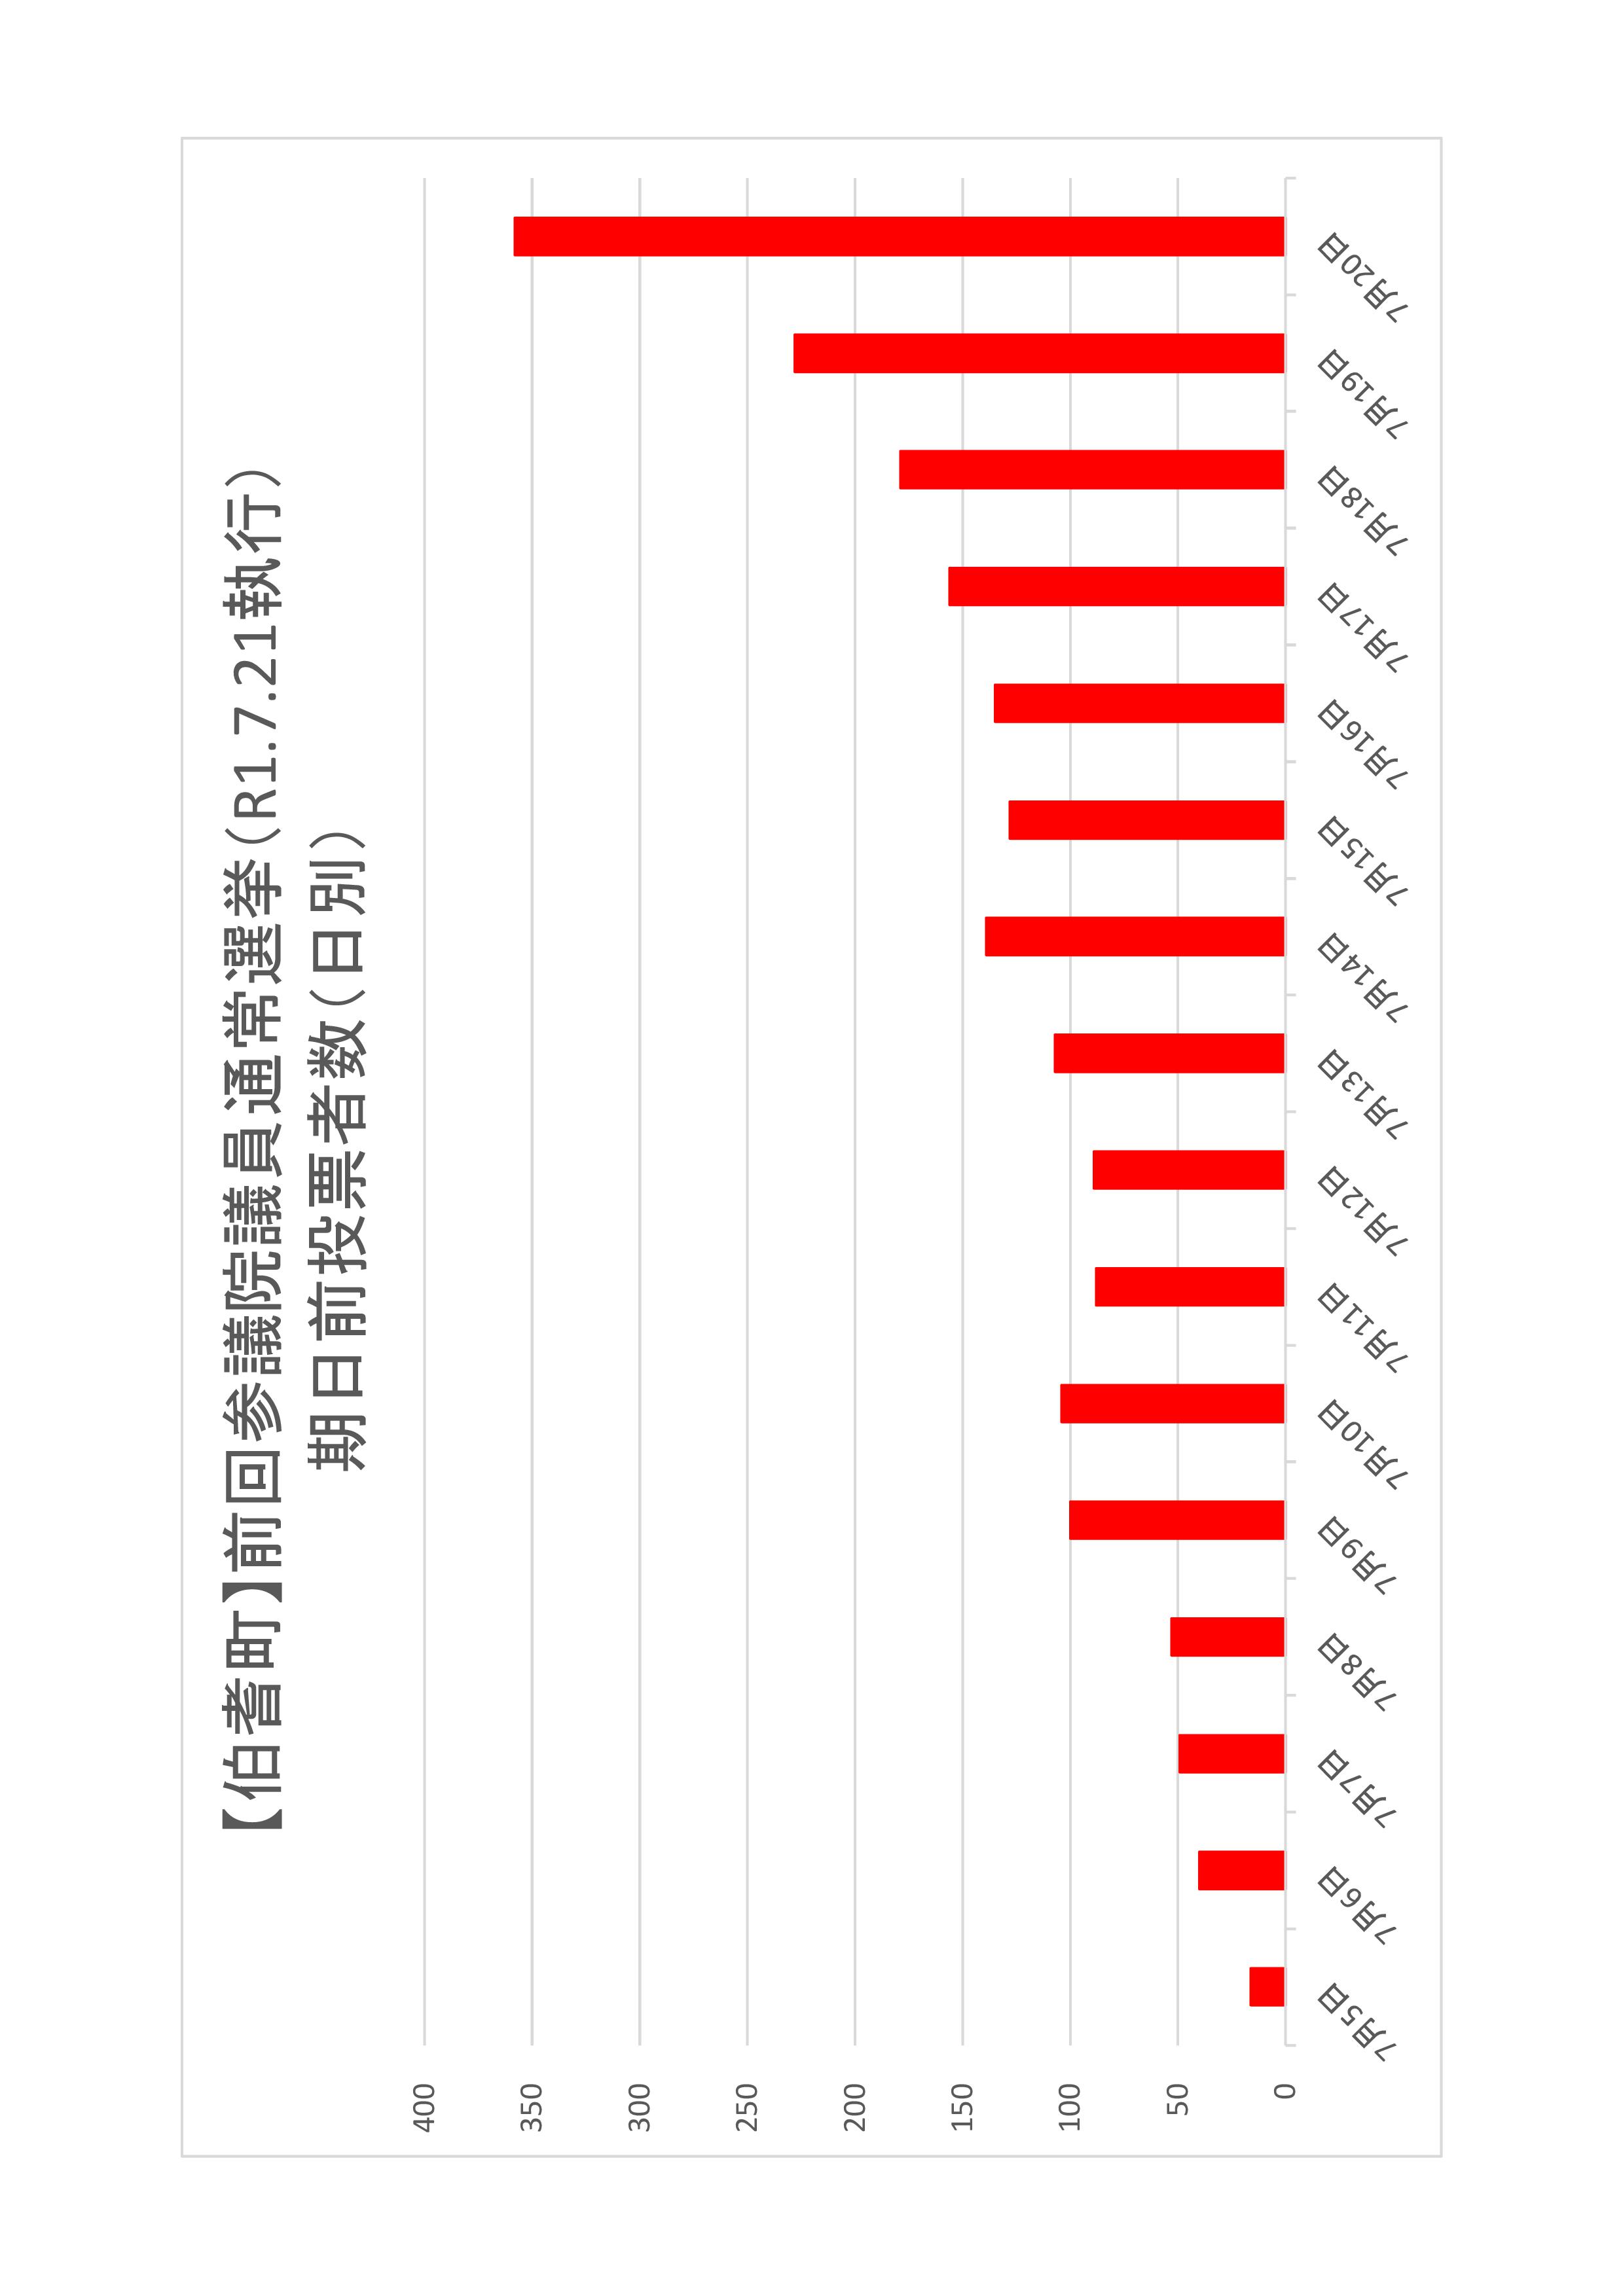 伯耆町の日別期日前投票者数のグラフ